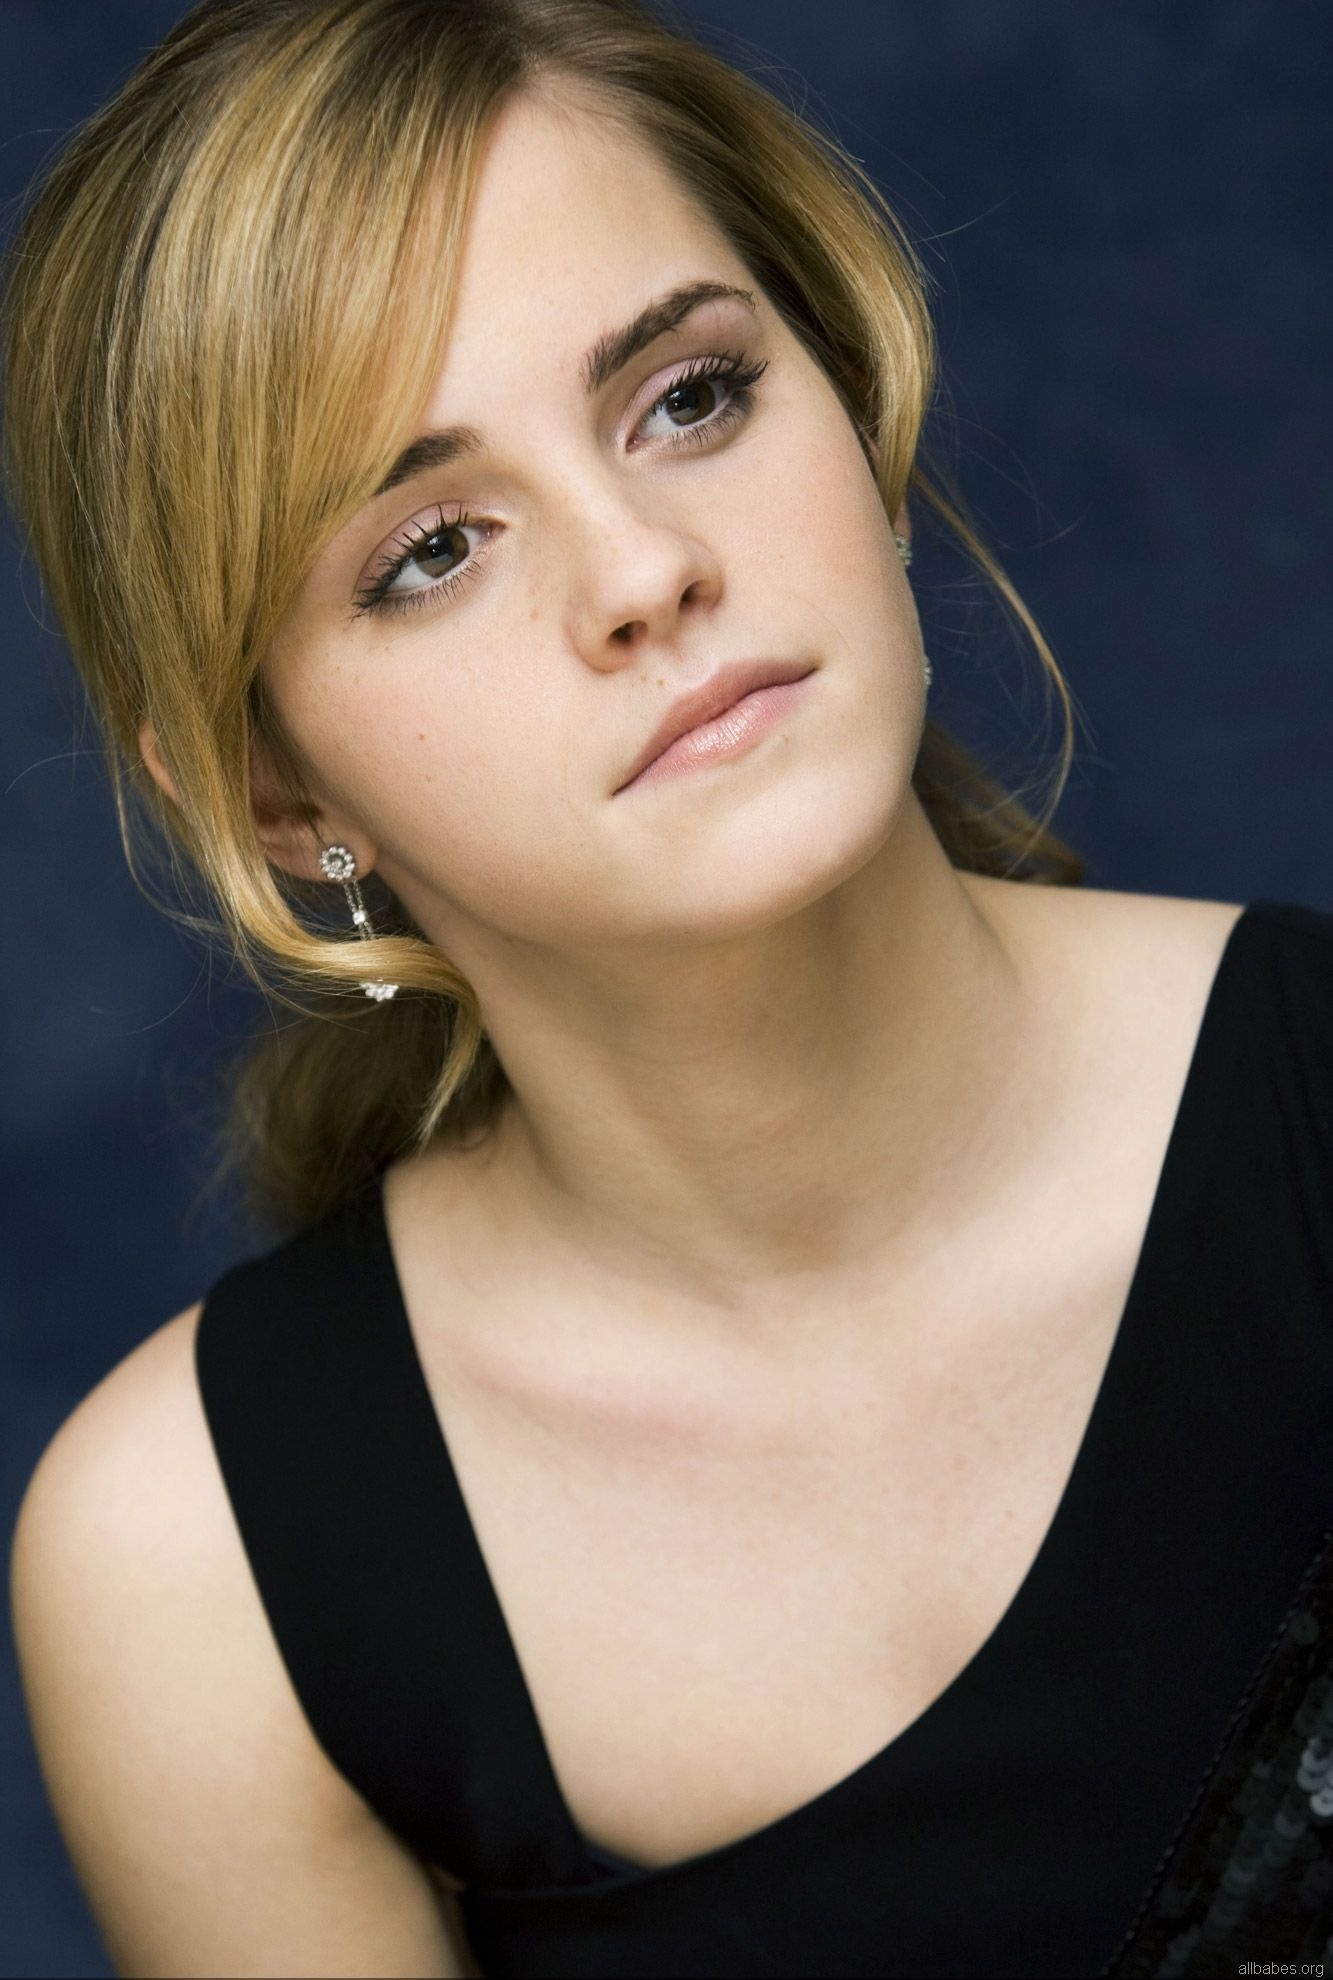 Emma Watson - Full Hd Emma Watson Hd Wallpaper For Iphone - HD Wallpaper 